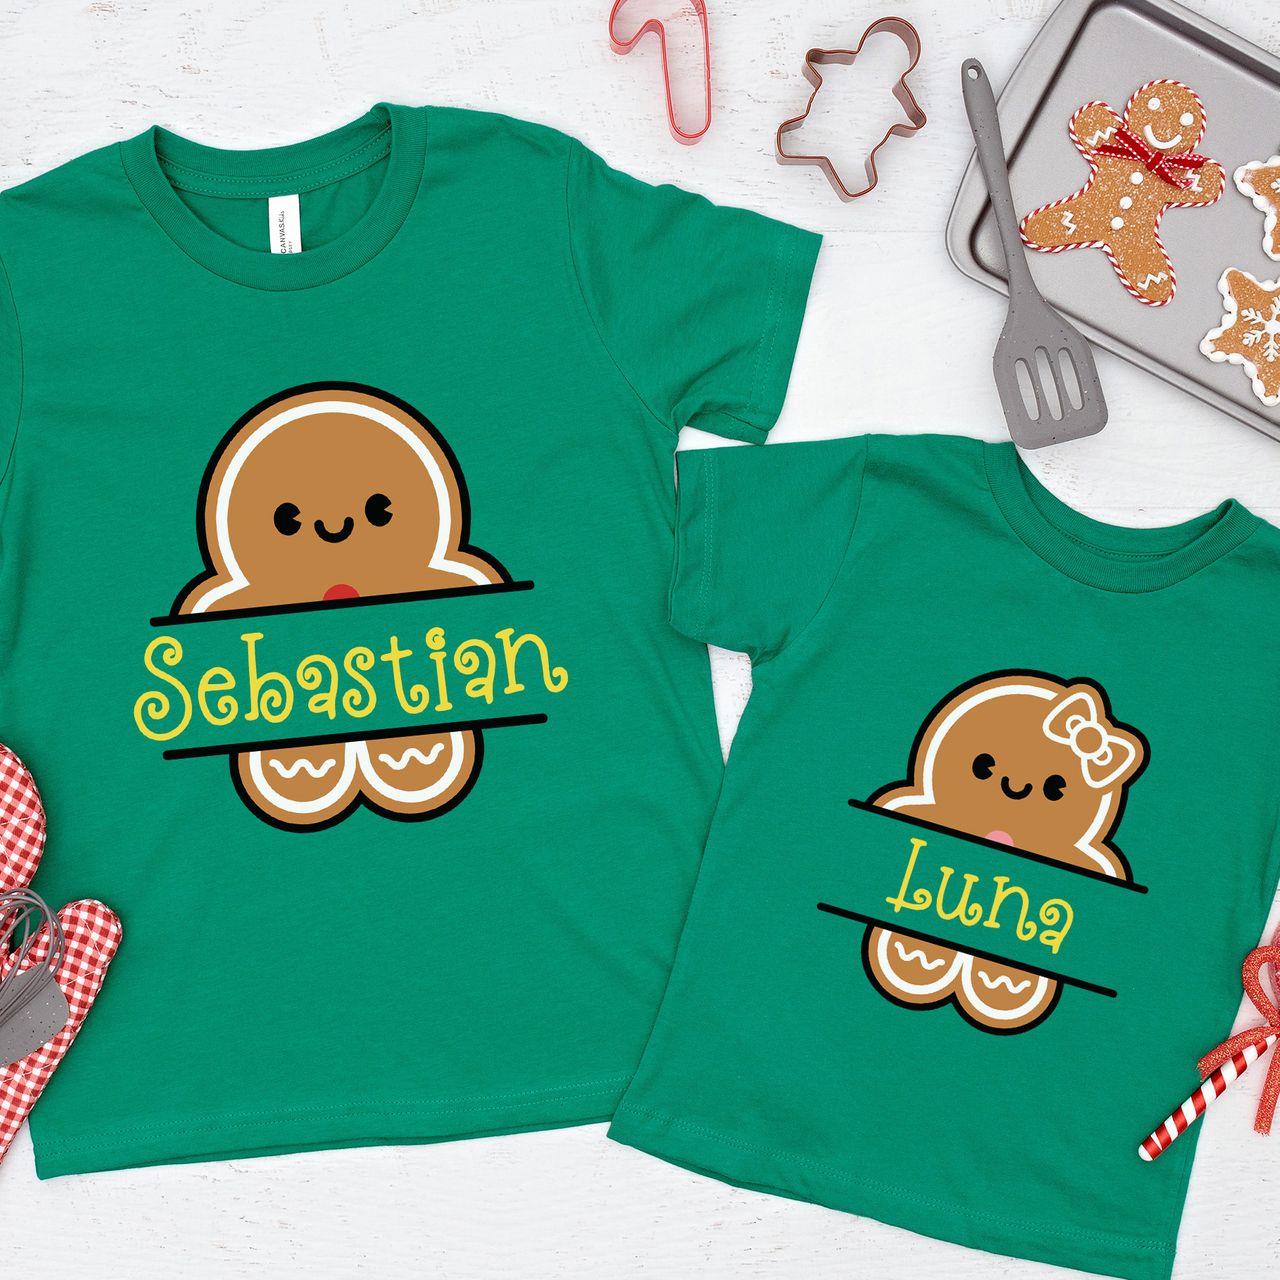 Gingerbread Men Split Monogram Matching Shirts